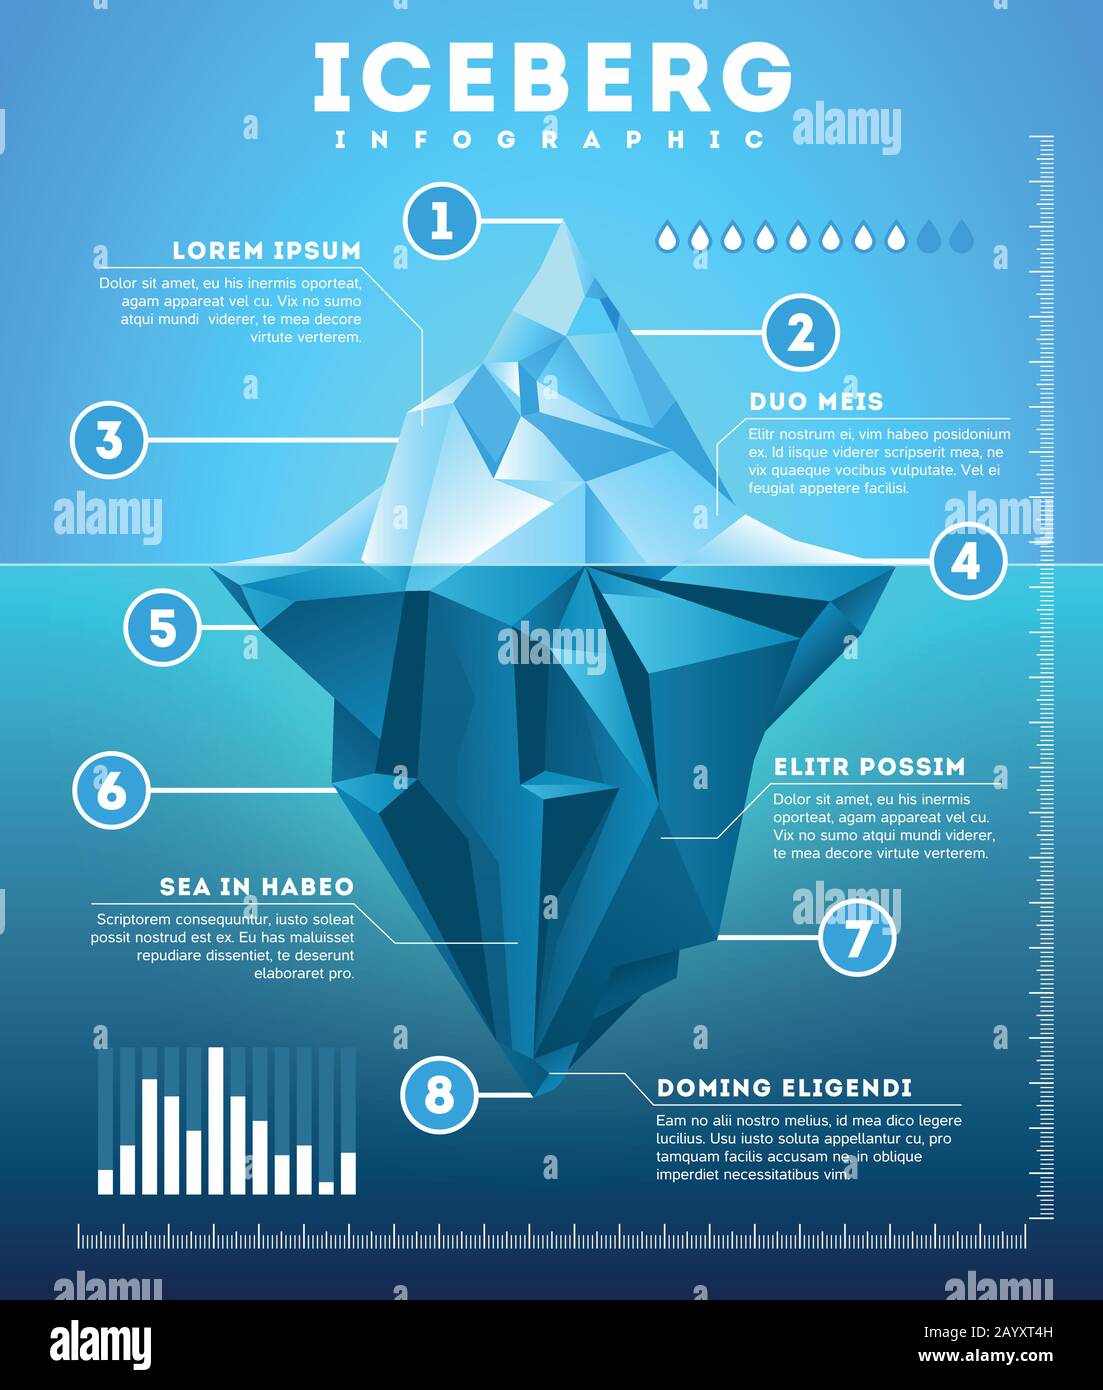 Infographie Vector iceberg. Modèle iceberg métaphore d'affaires, info financière polygone iceberg illustration Illustration de Vecteur